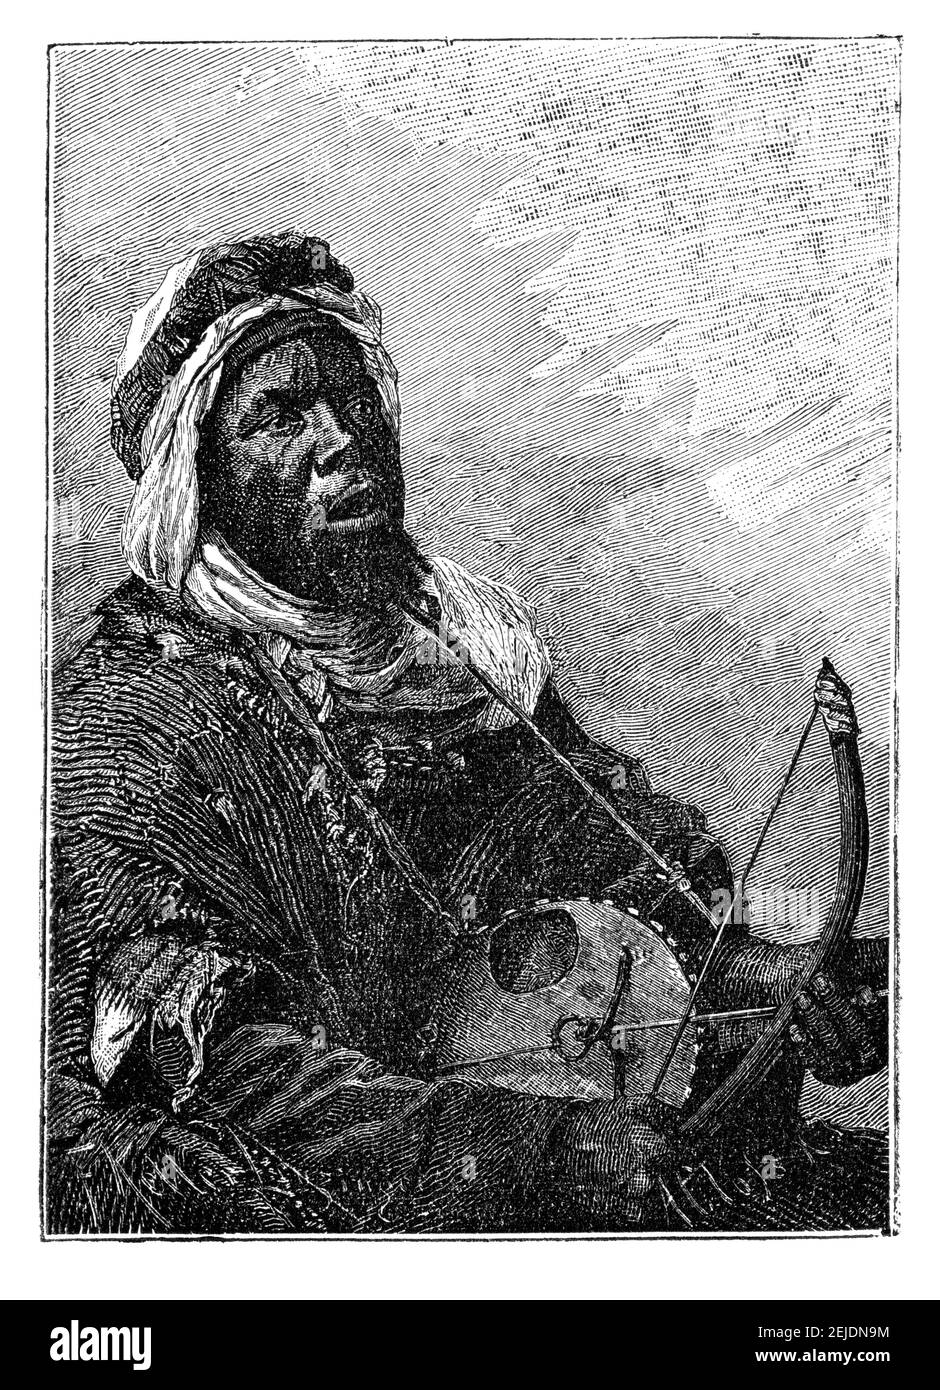 Musicista griot dell'Africa occidentale che suona una canzone.Cultura e storia dell'Africa occidentale. Immagine in bianco e nero d'epoca. 19 ° secolo. Foto Stock